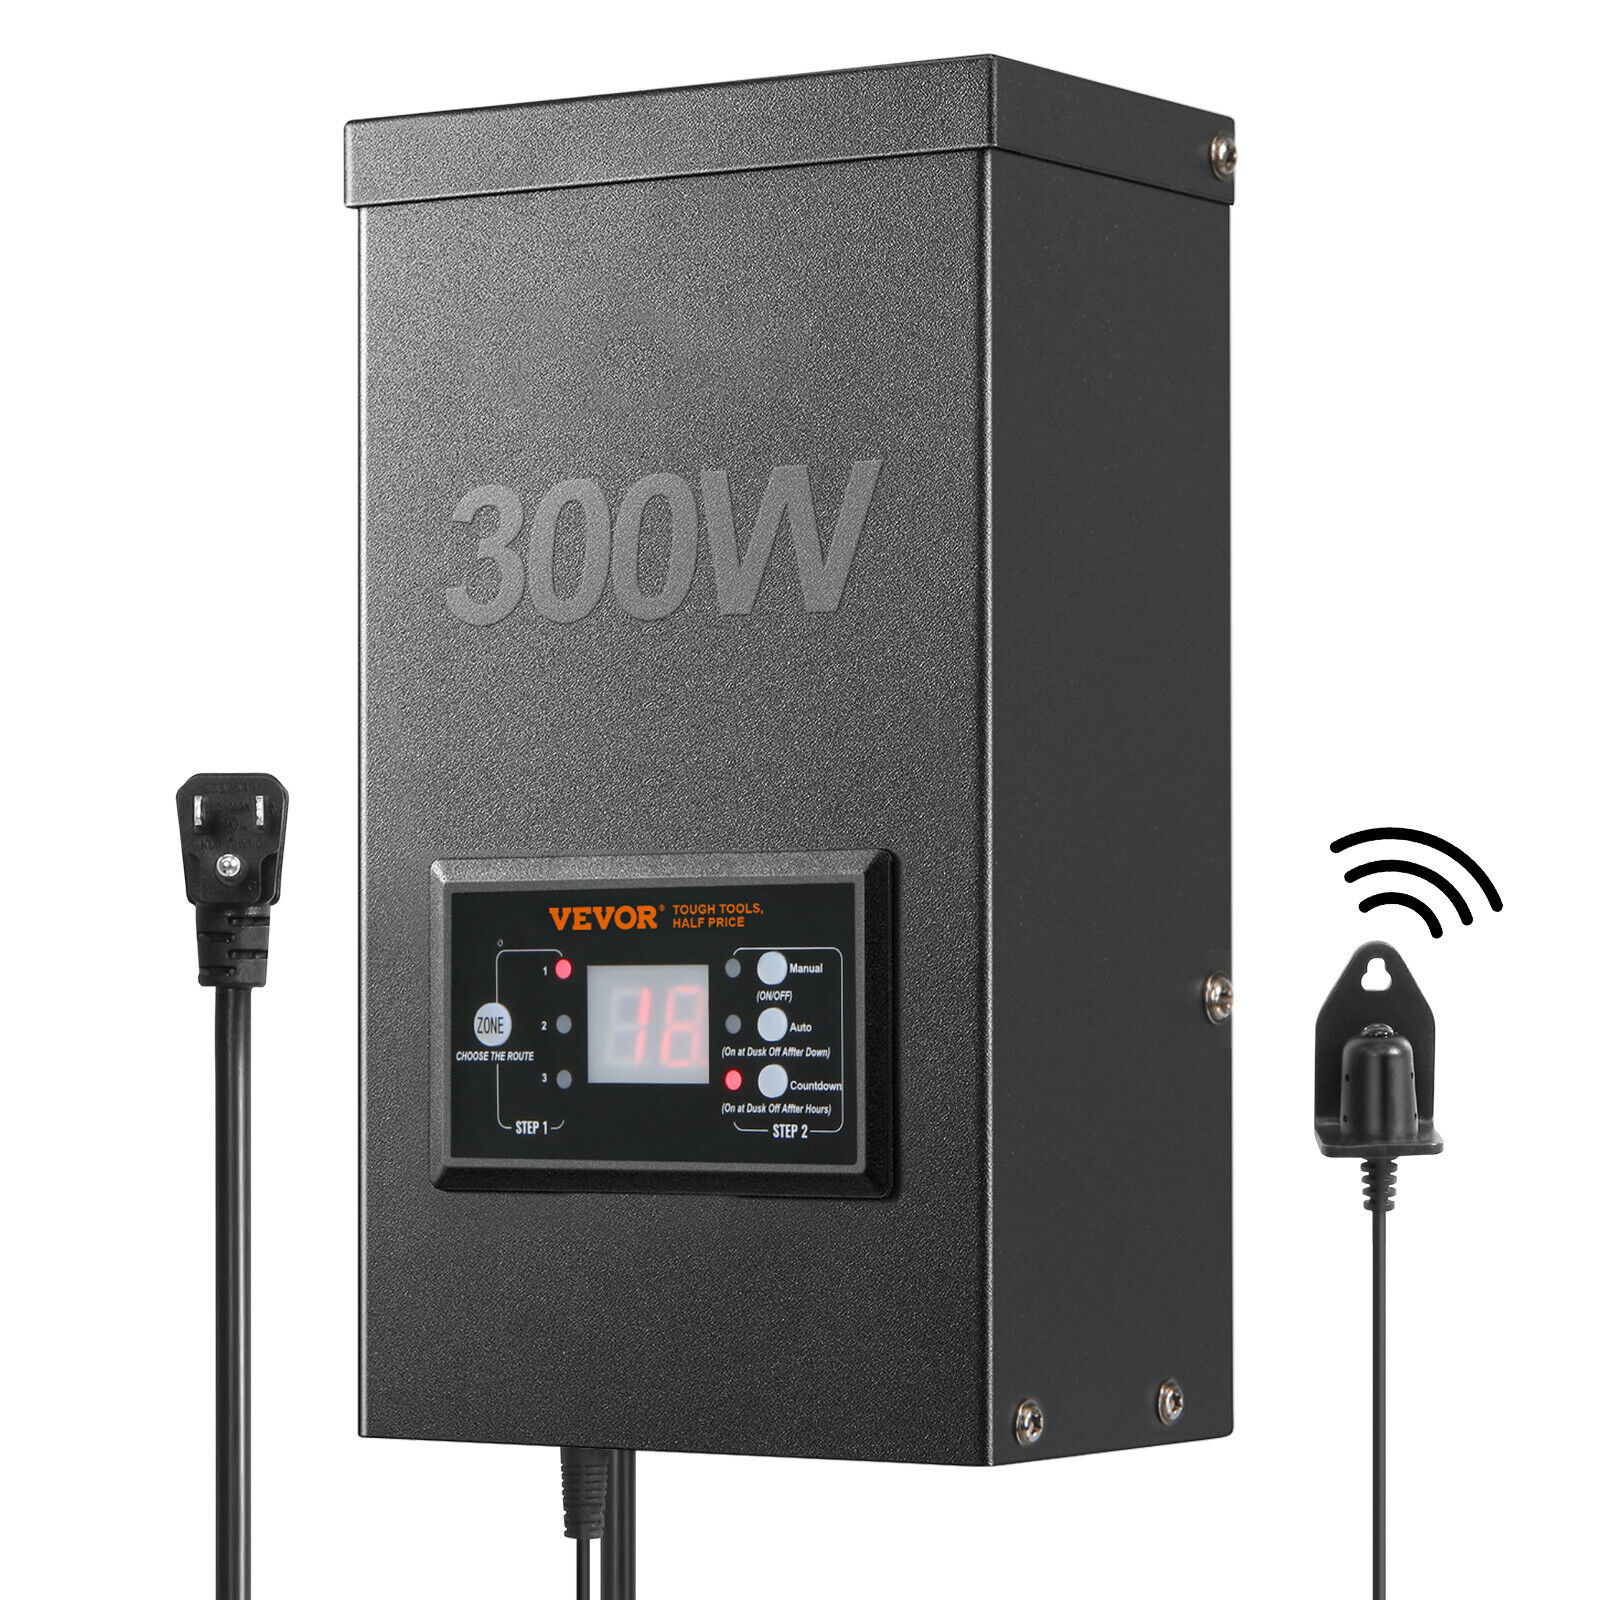 VEVOR 300W Low Voltage Landscape Transformer with Timer and Photocell Sensor